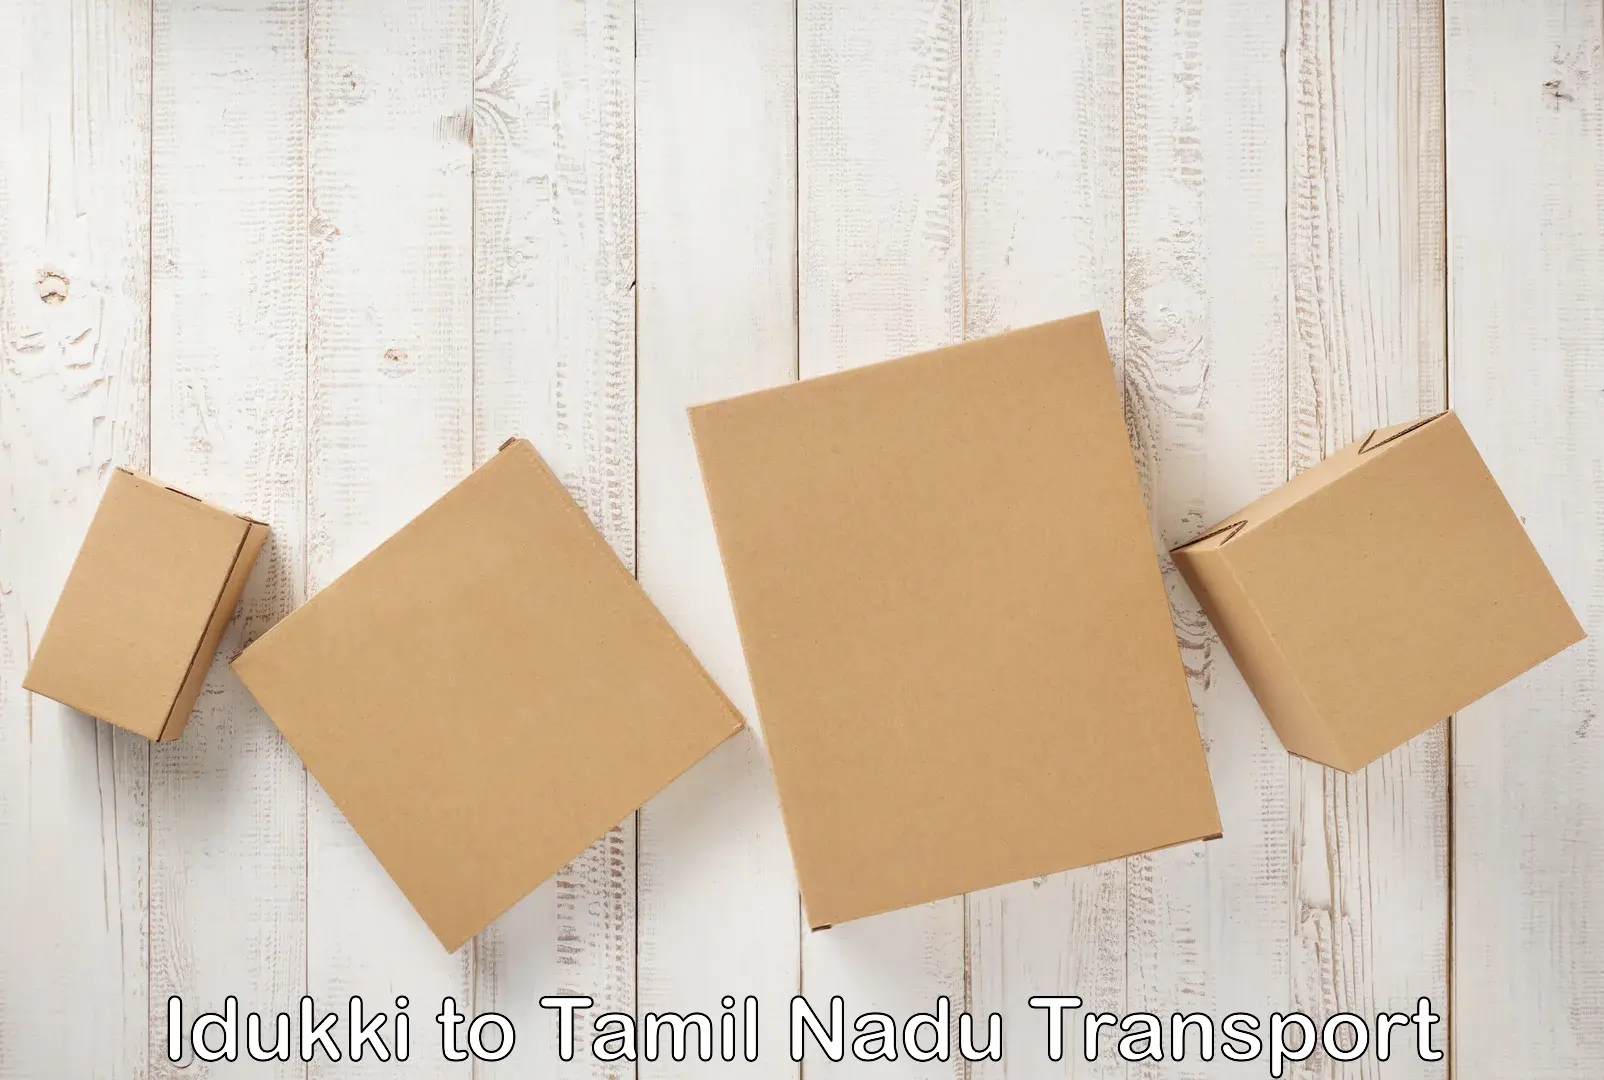 Truck transport companies in India Idukki to Tamil Nadu